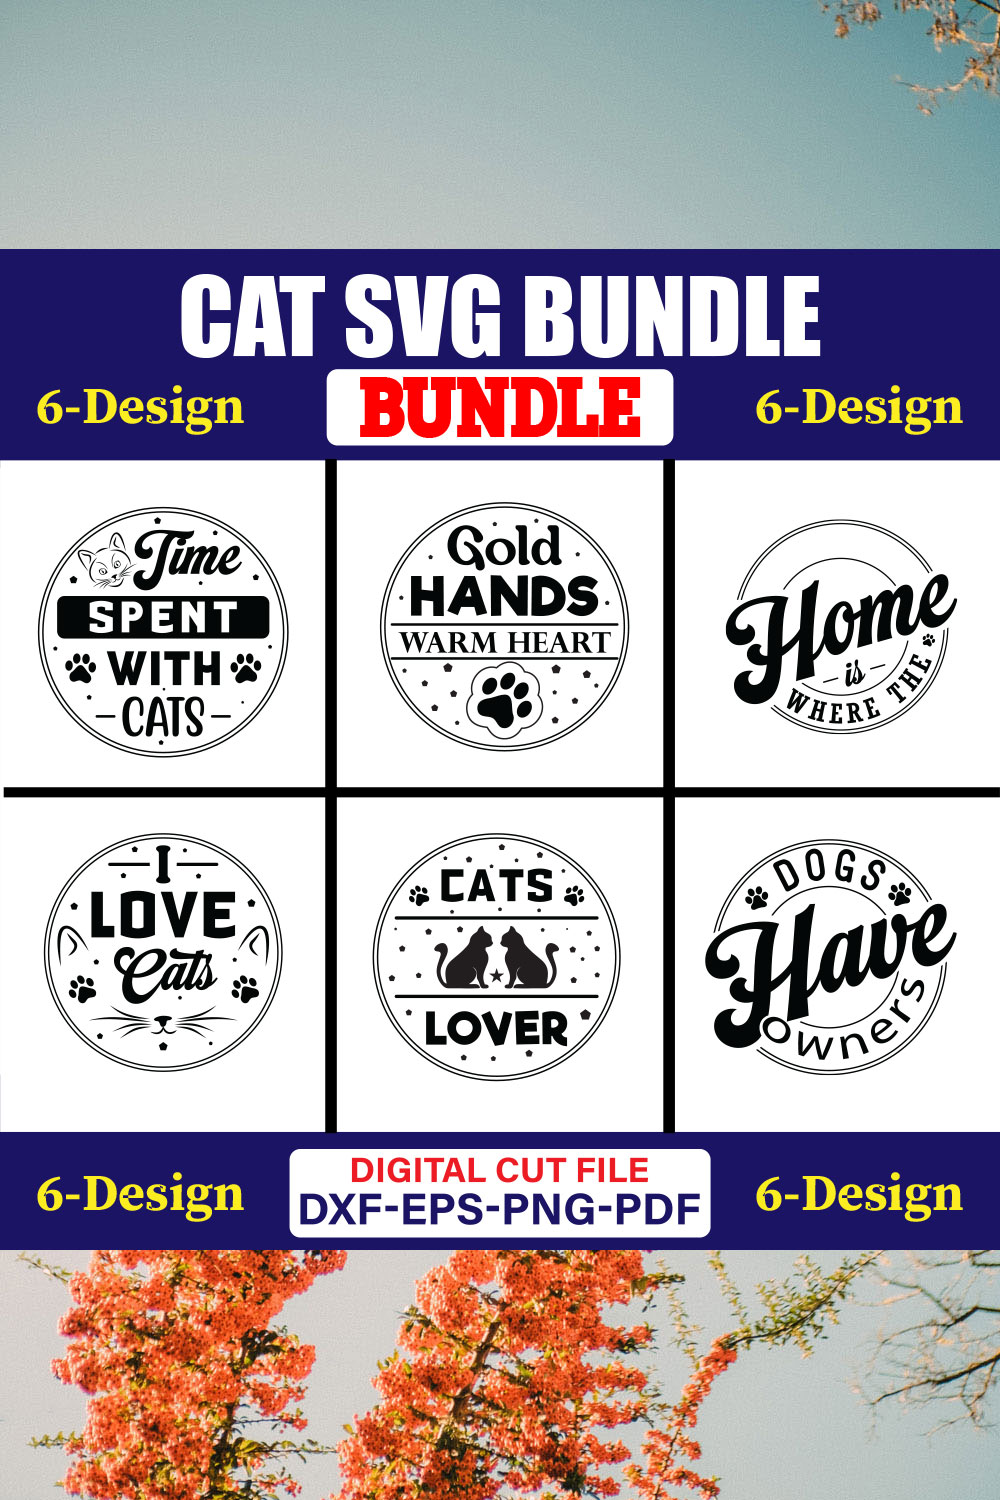 Cat SVG T-shirt Design Bundle Vol-11 pinterest preview image.